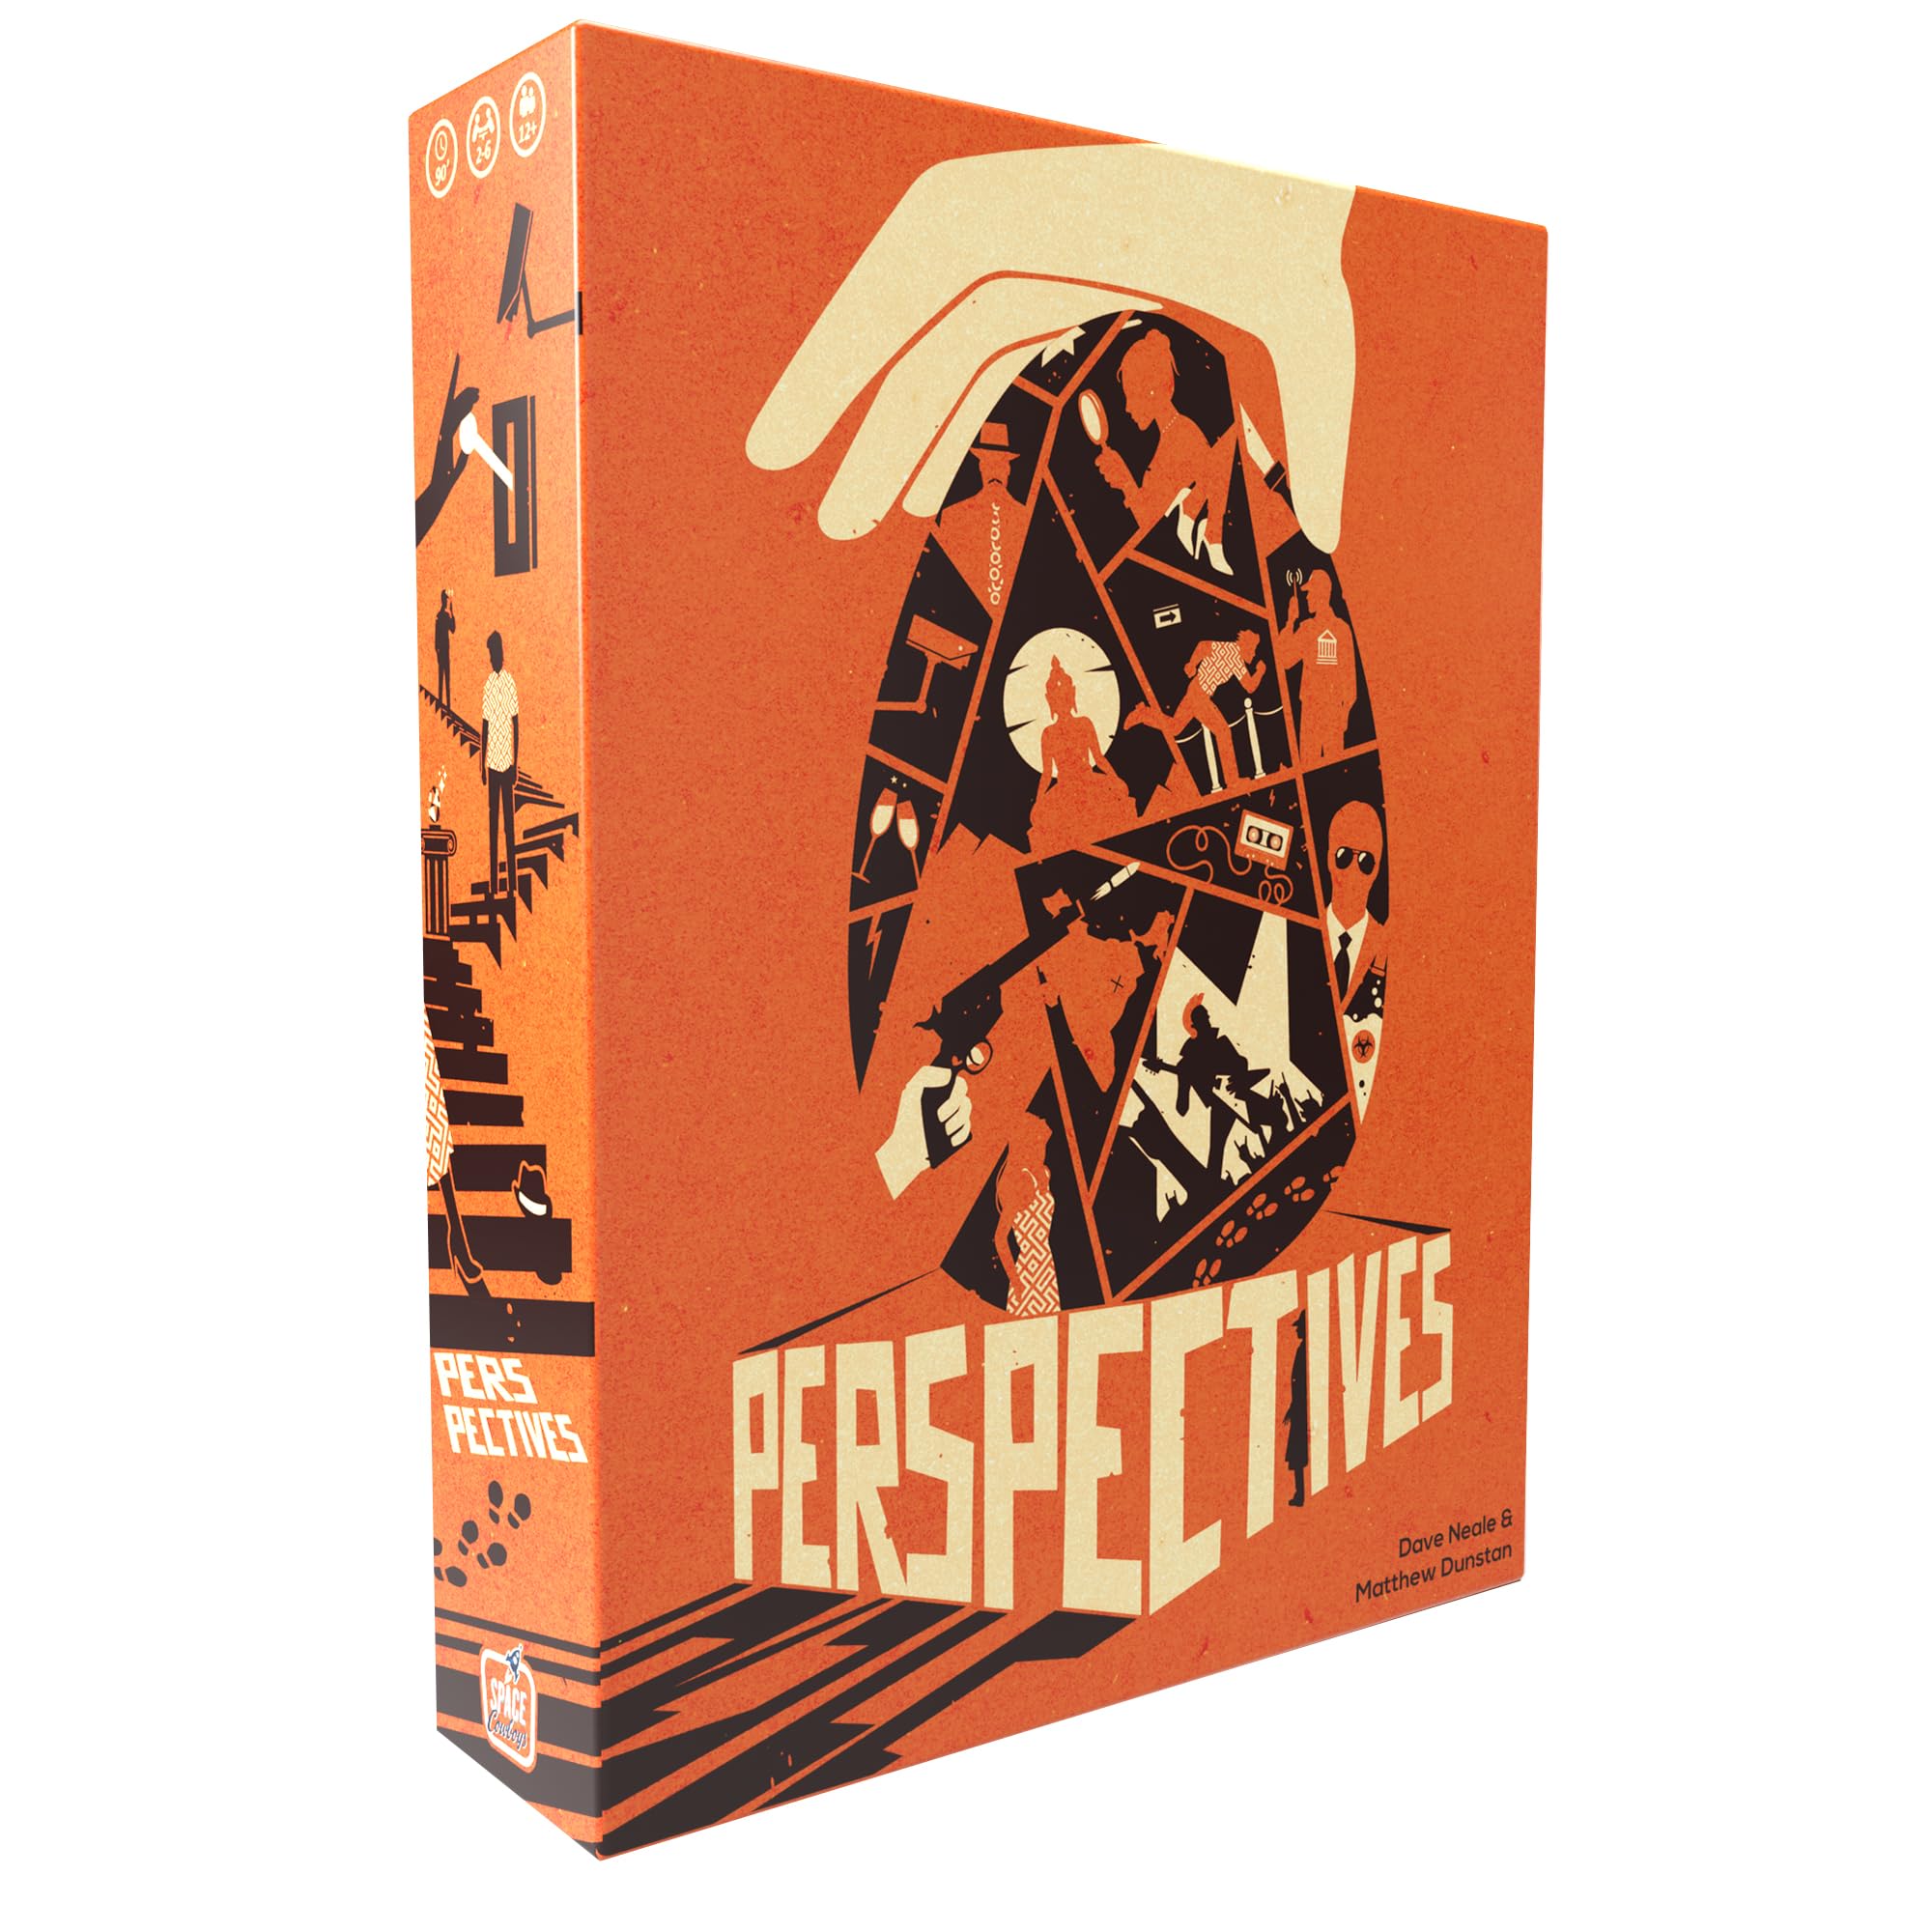 Space Cowboys Perspektiven (Orange Box) - Mystery Game, kooperatives Geschichtenerzählspiel für Kinder und Erwachsene, ab 14 Jahren, 2-6 Spieler, 90 Minuten Spielzeit, hergestellt